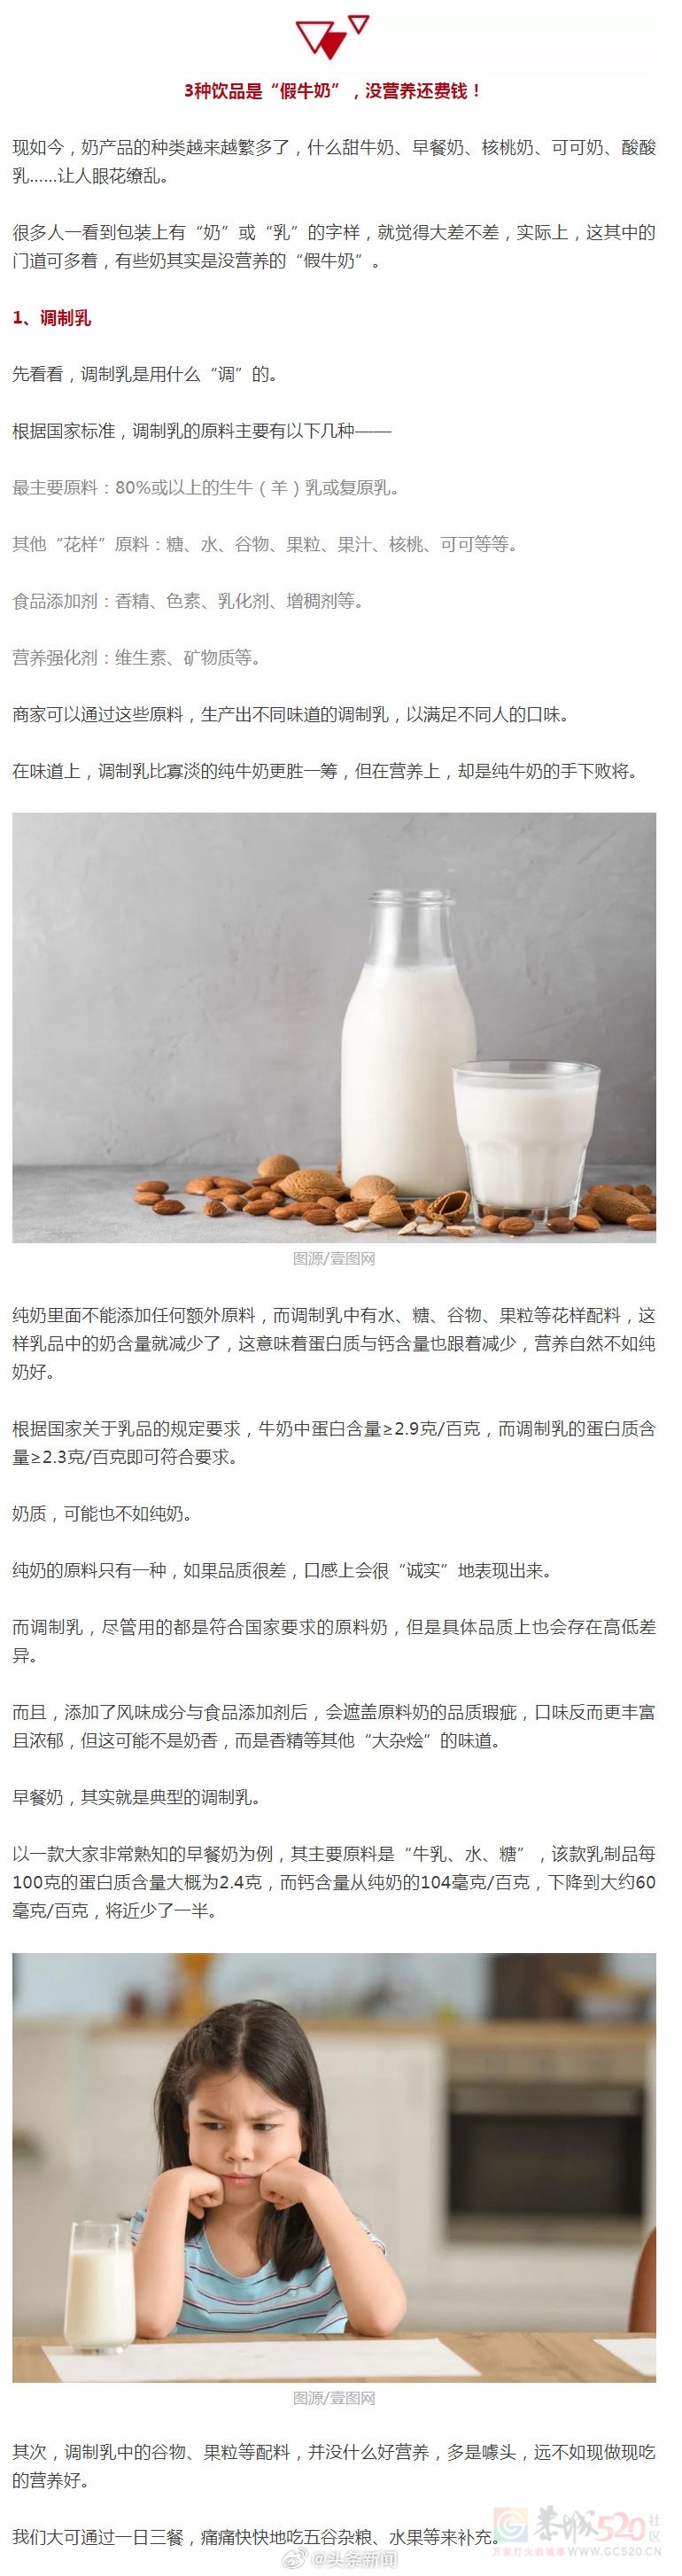 大家买牛奶记得看配料表，不然容易买到假牛奶548 / 作者:闲不住a / 帖子ID:313568